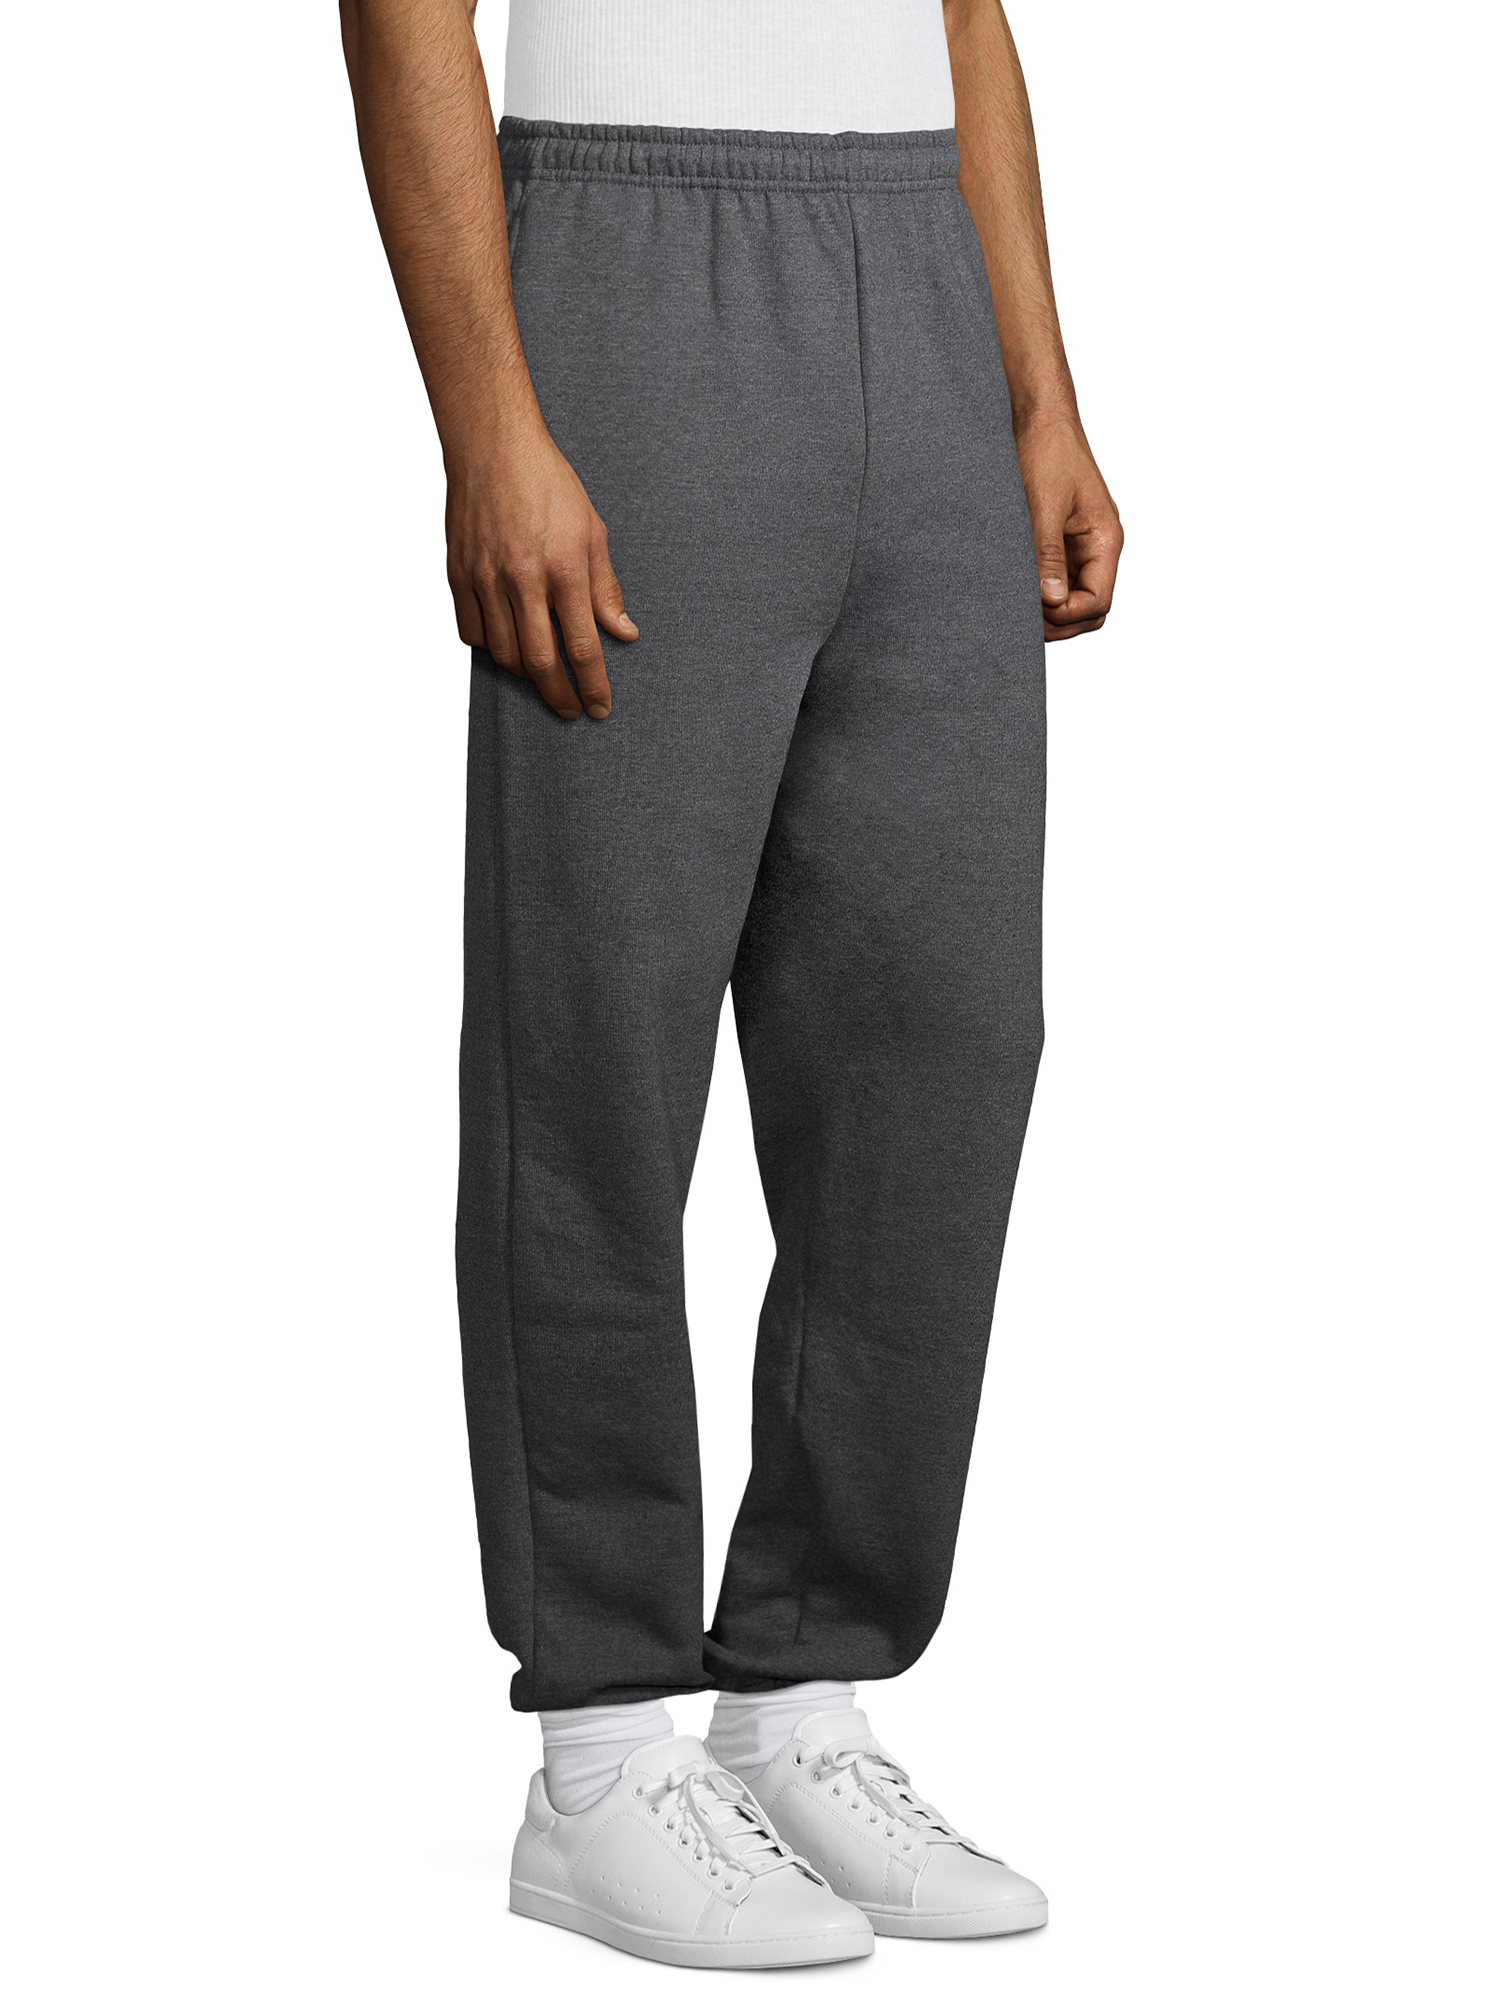 Gildan Men's Fleece Elastic Bottom Pocketed Sweatpants, up to Size 2XL - image 2 of 6